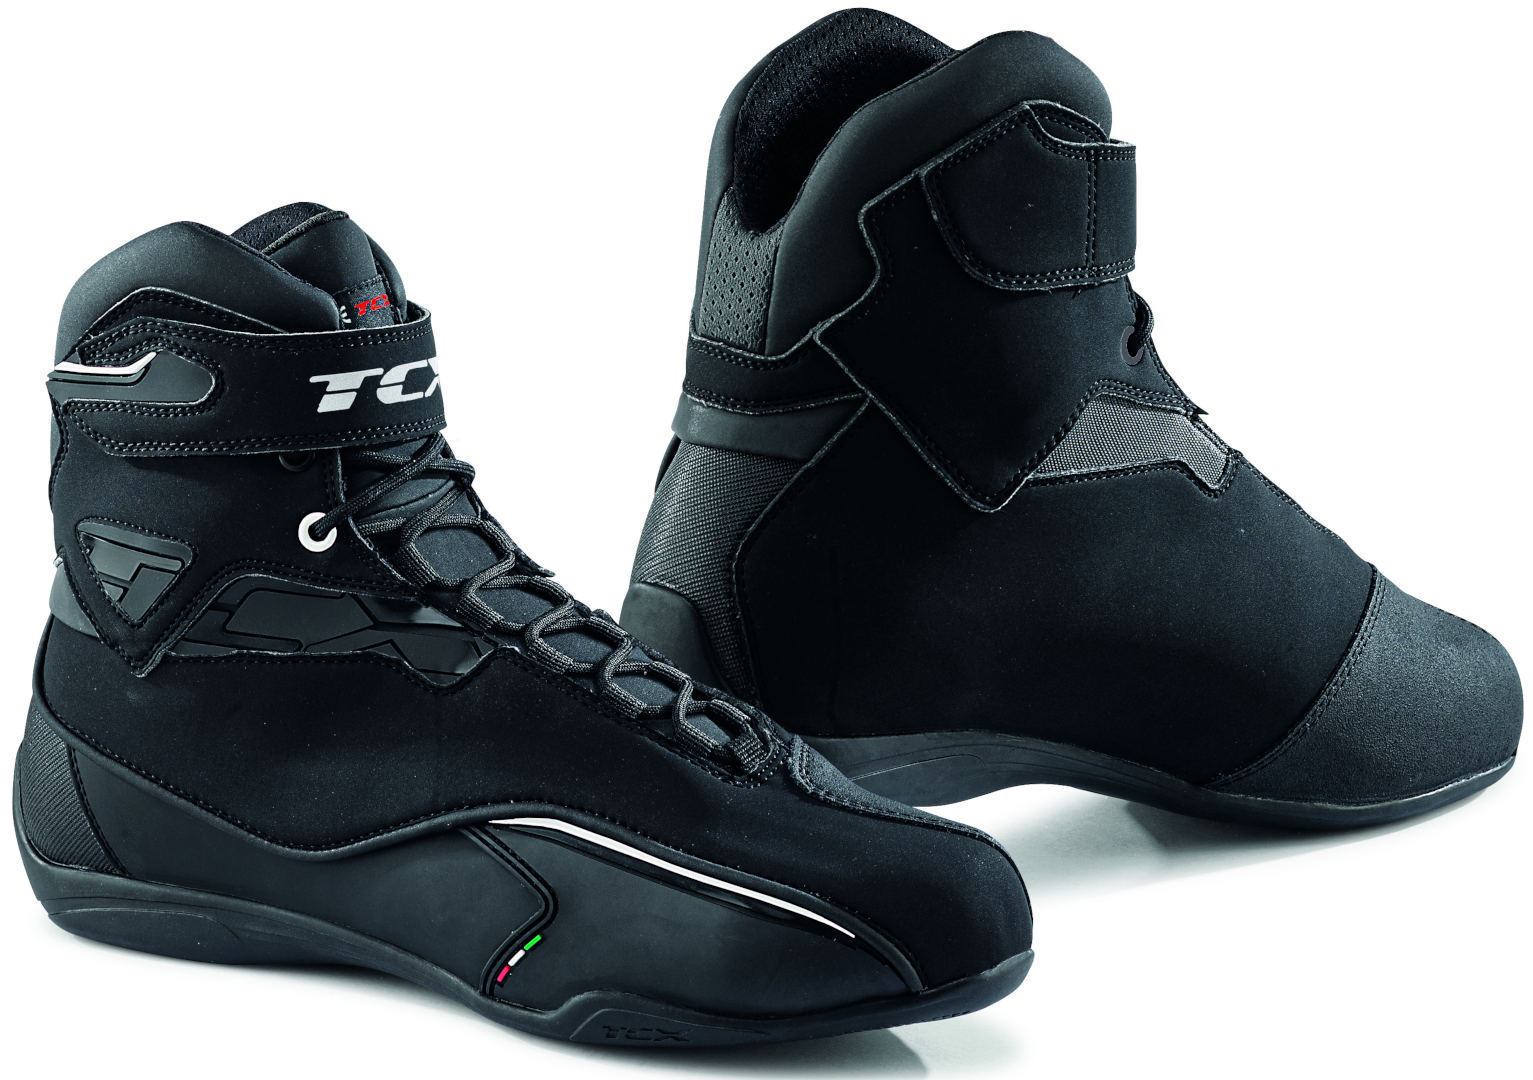 TCX Zeta Chaussures de moto imperméables Noir taille : 42